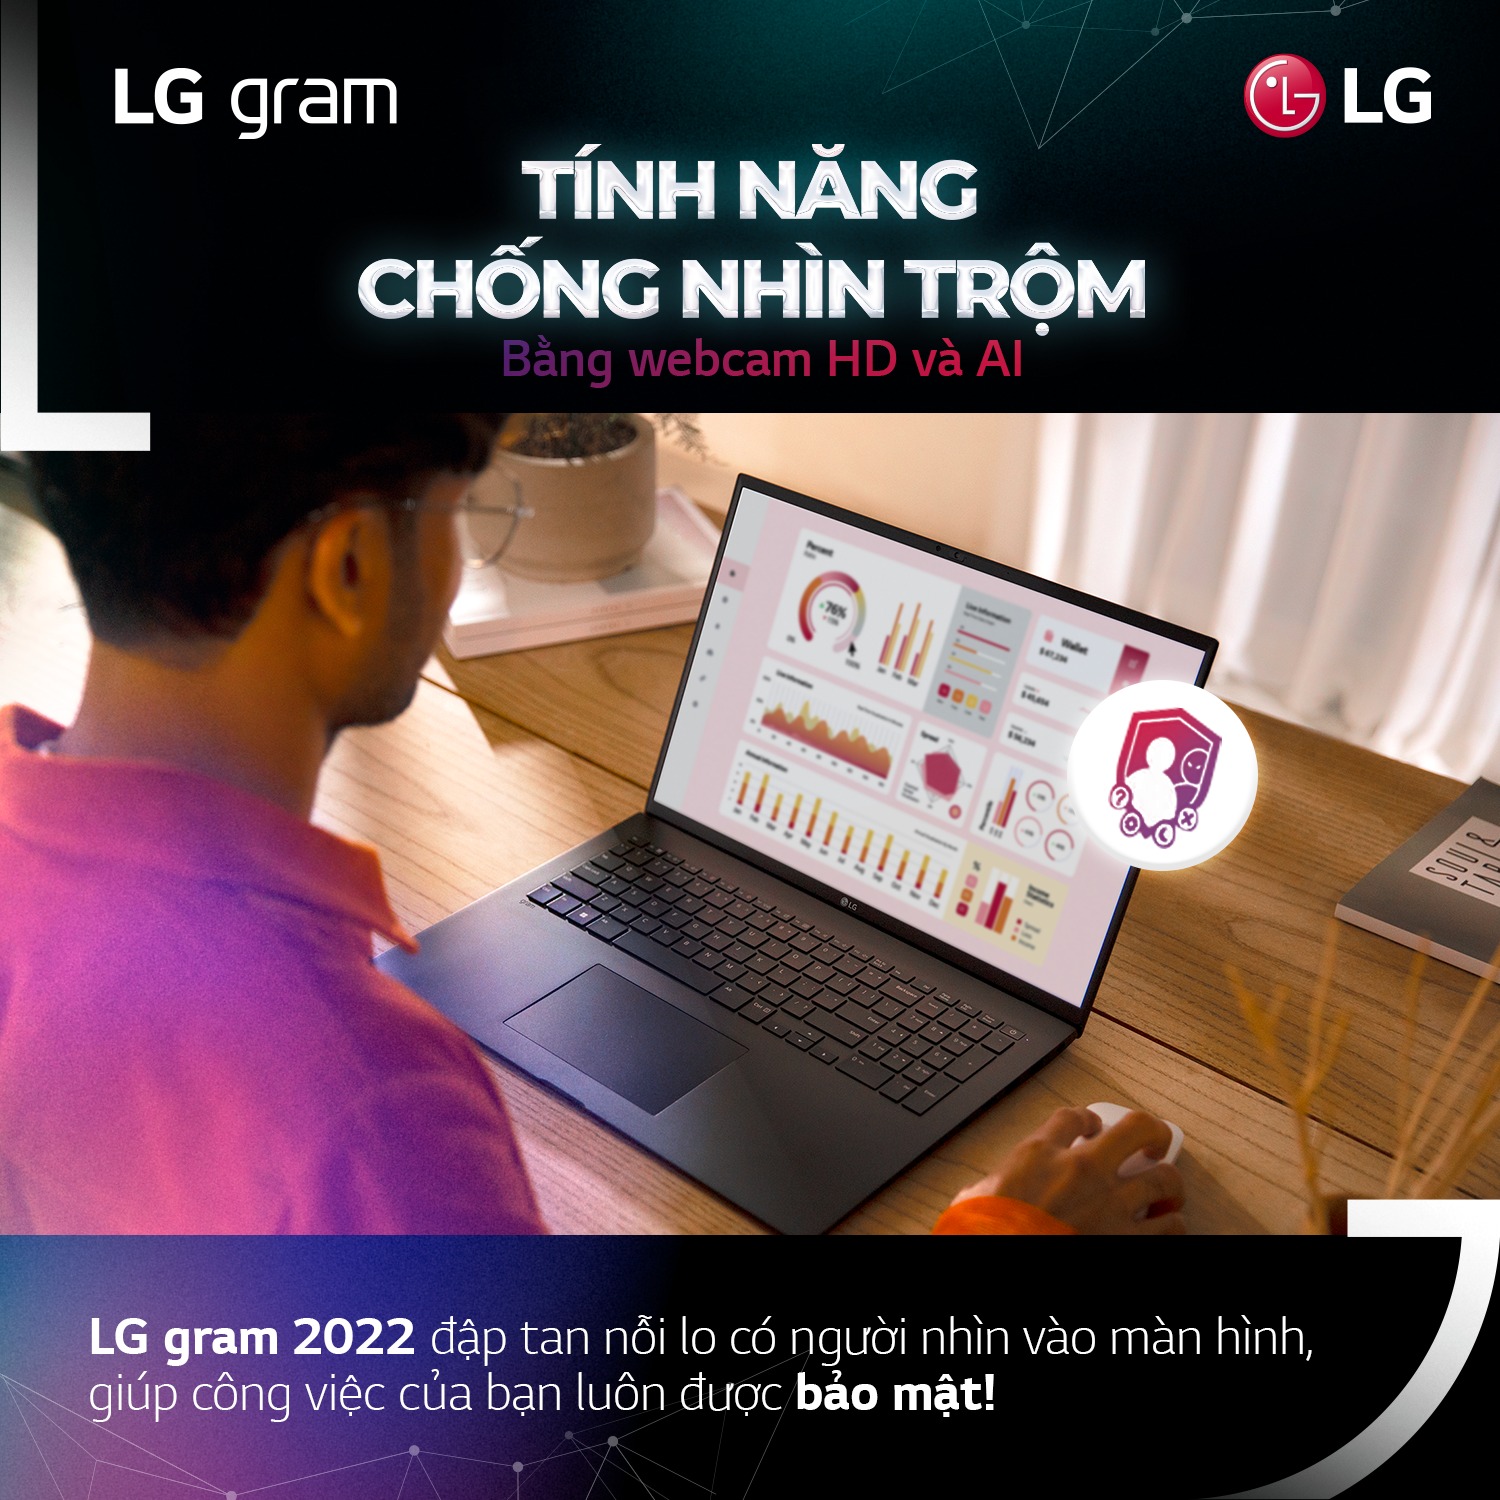 LG GRAM 2022 \